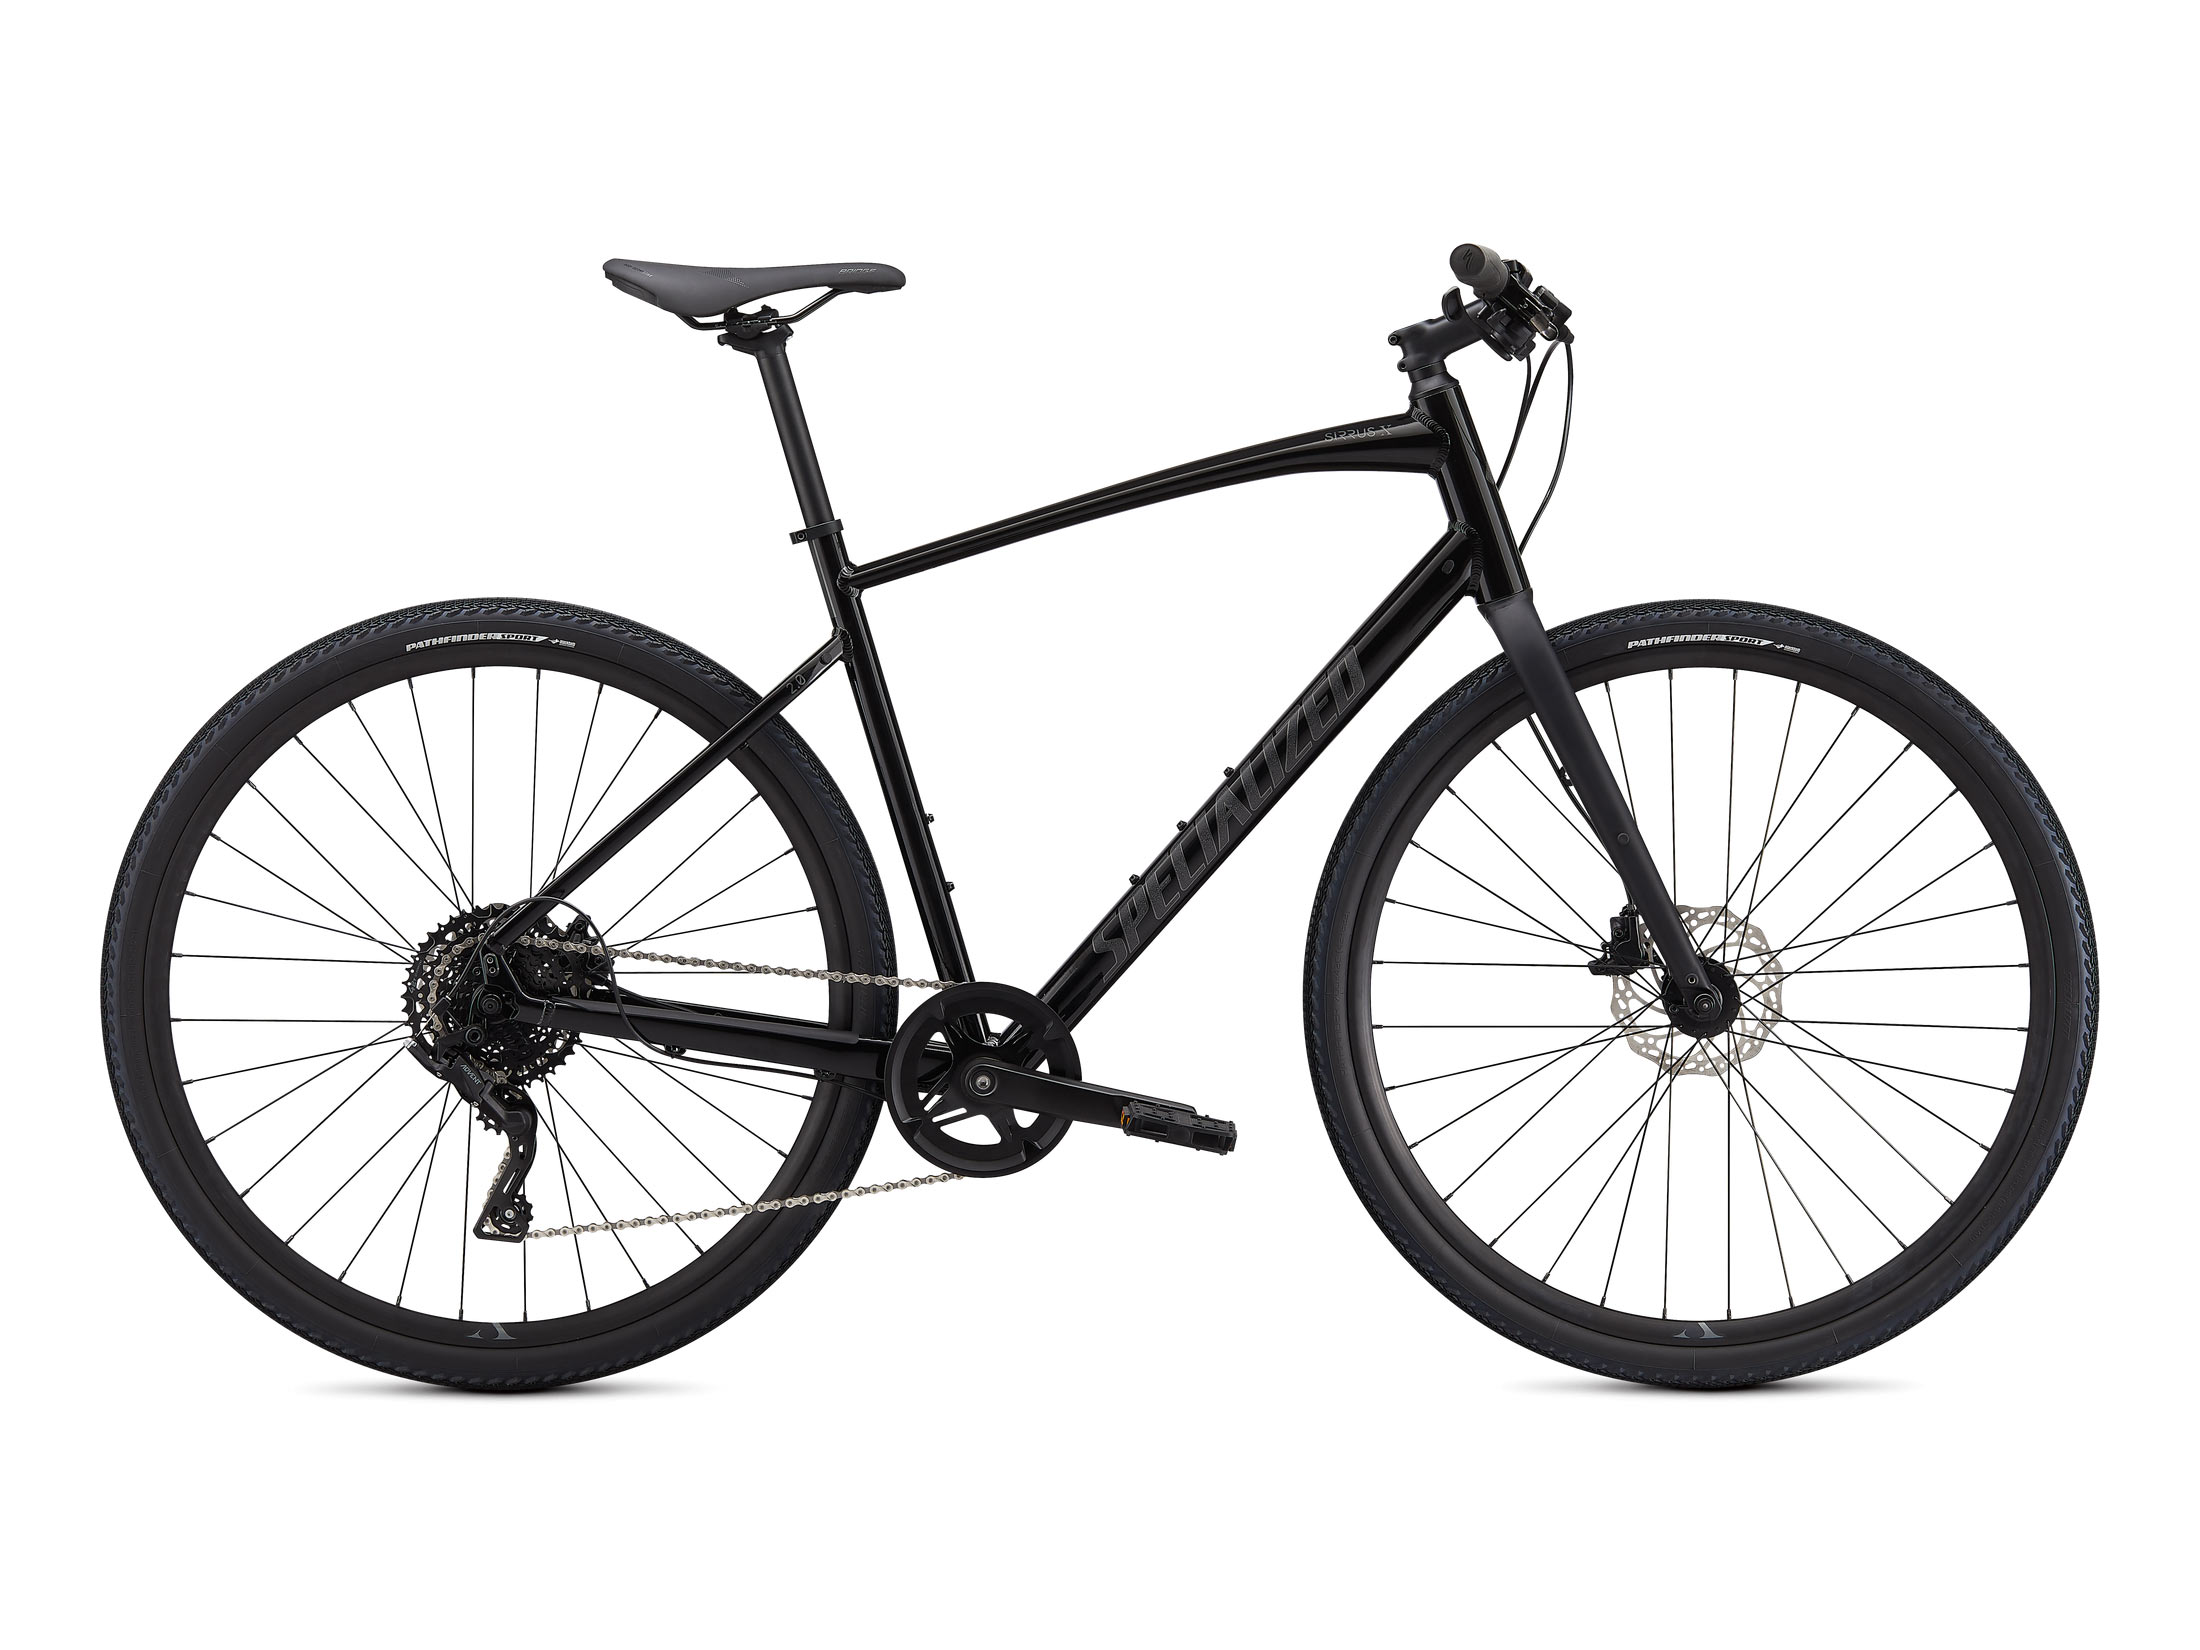 Ποδήλατο Specialized Sirrus X 2.0 - Gloss Black / Satin Charcoal Reflective (S)